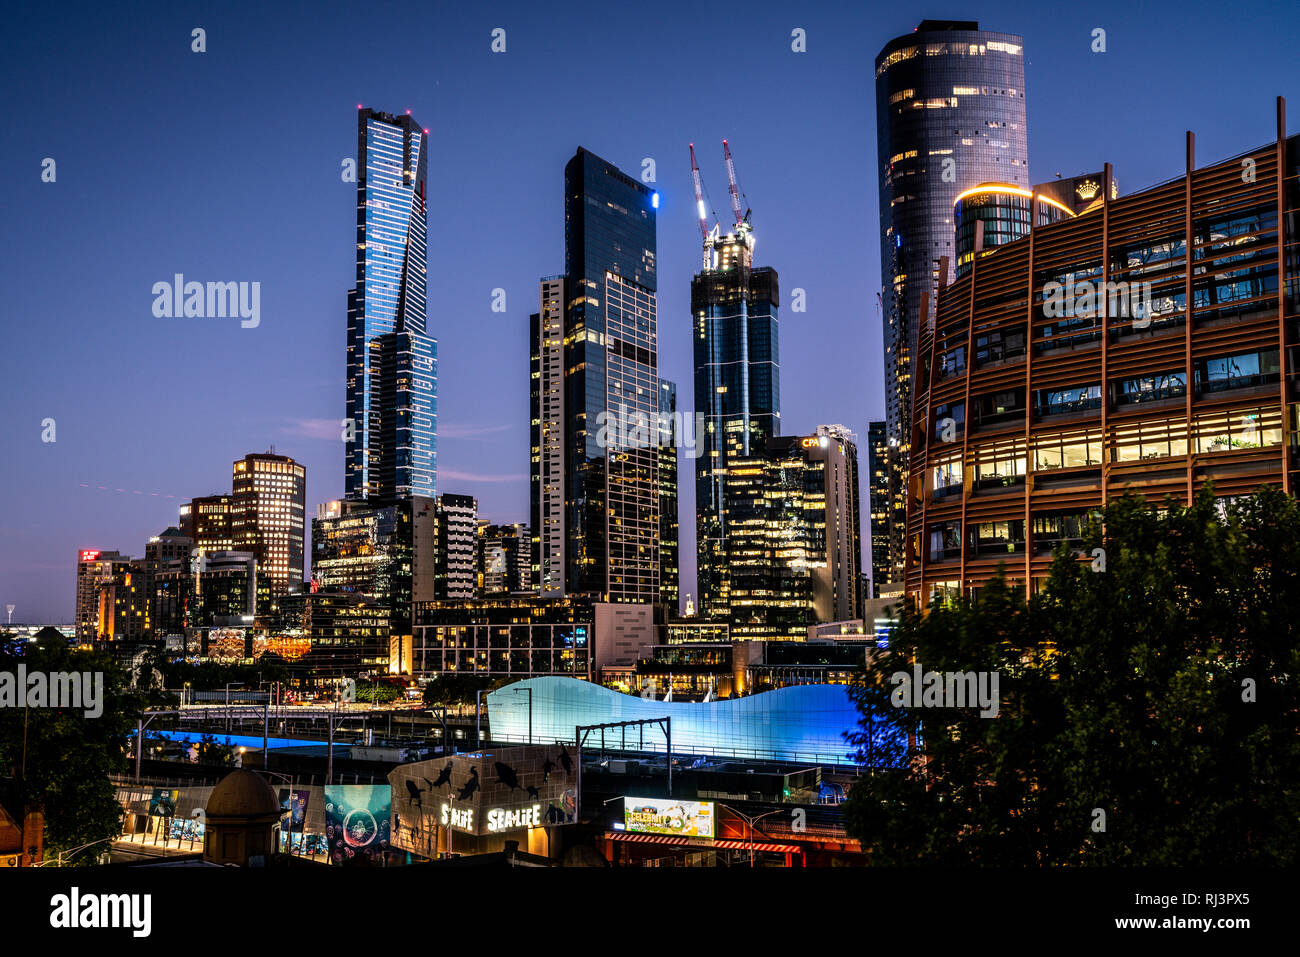 El 3 de enero de 2019, Melbourne, Australia: Melbourne skyline al atardecer con Riverside Quay edificios, incluyendo la torre Eureka de Melbourne Australia Foto de stock